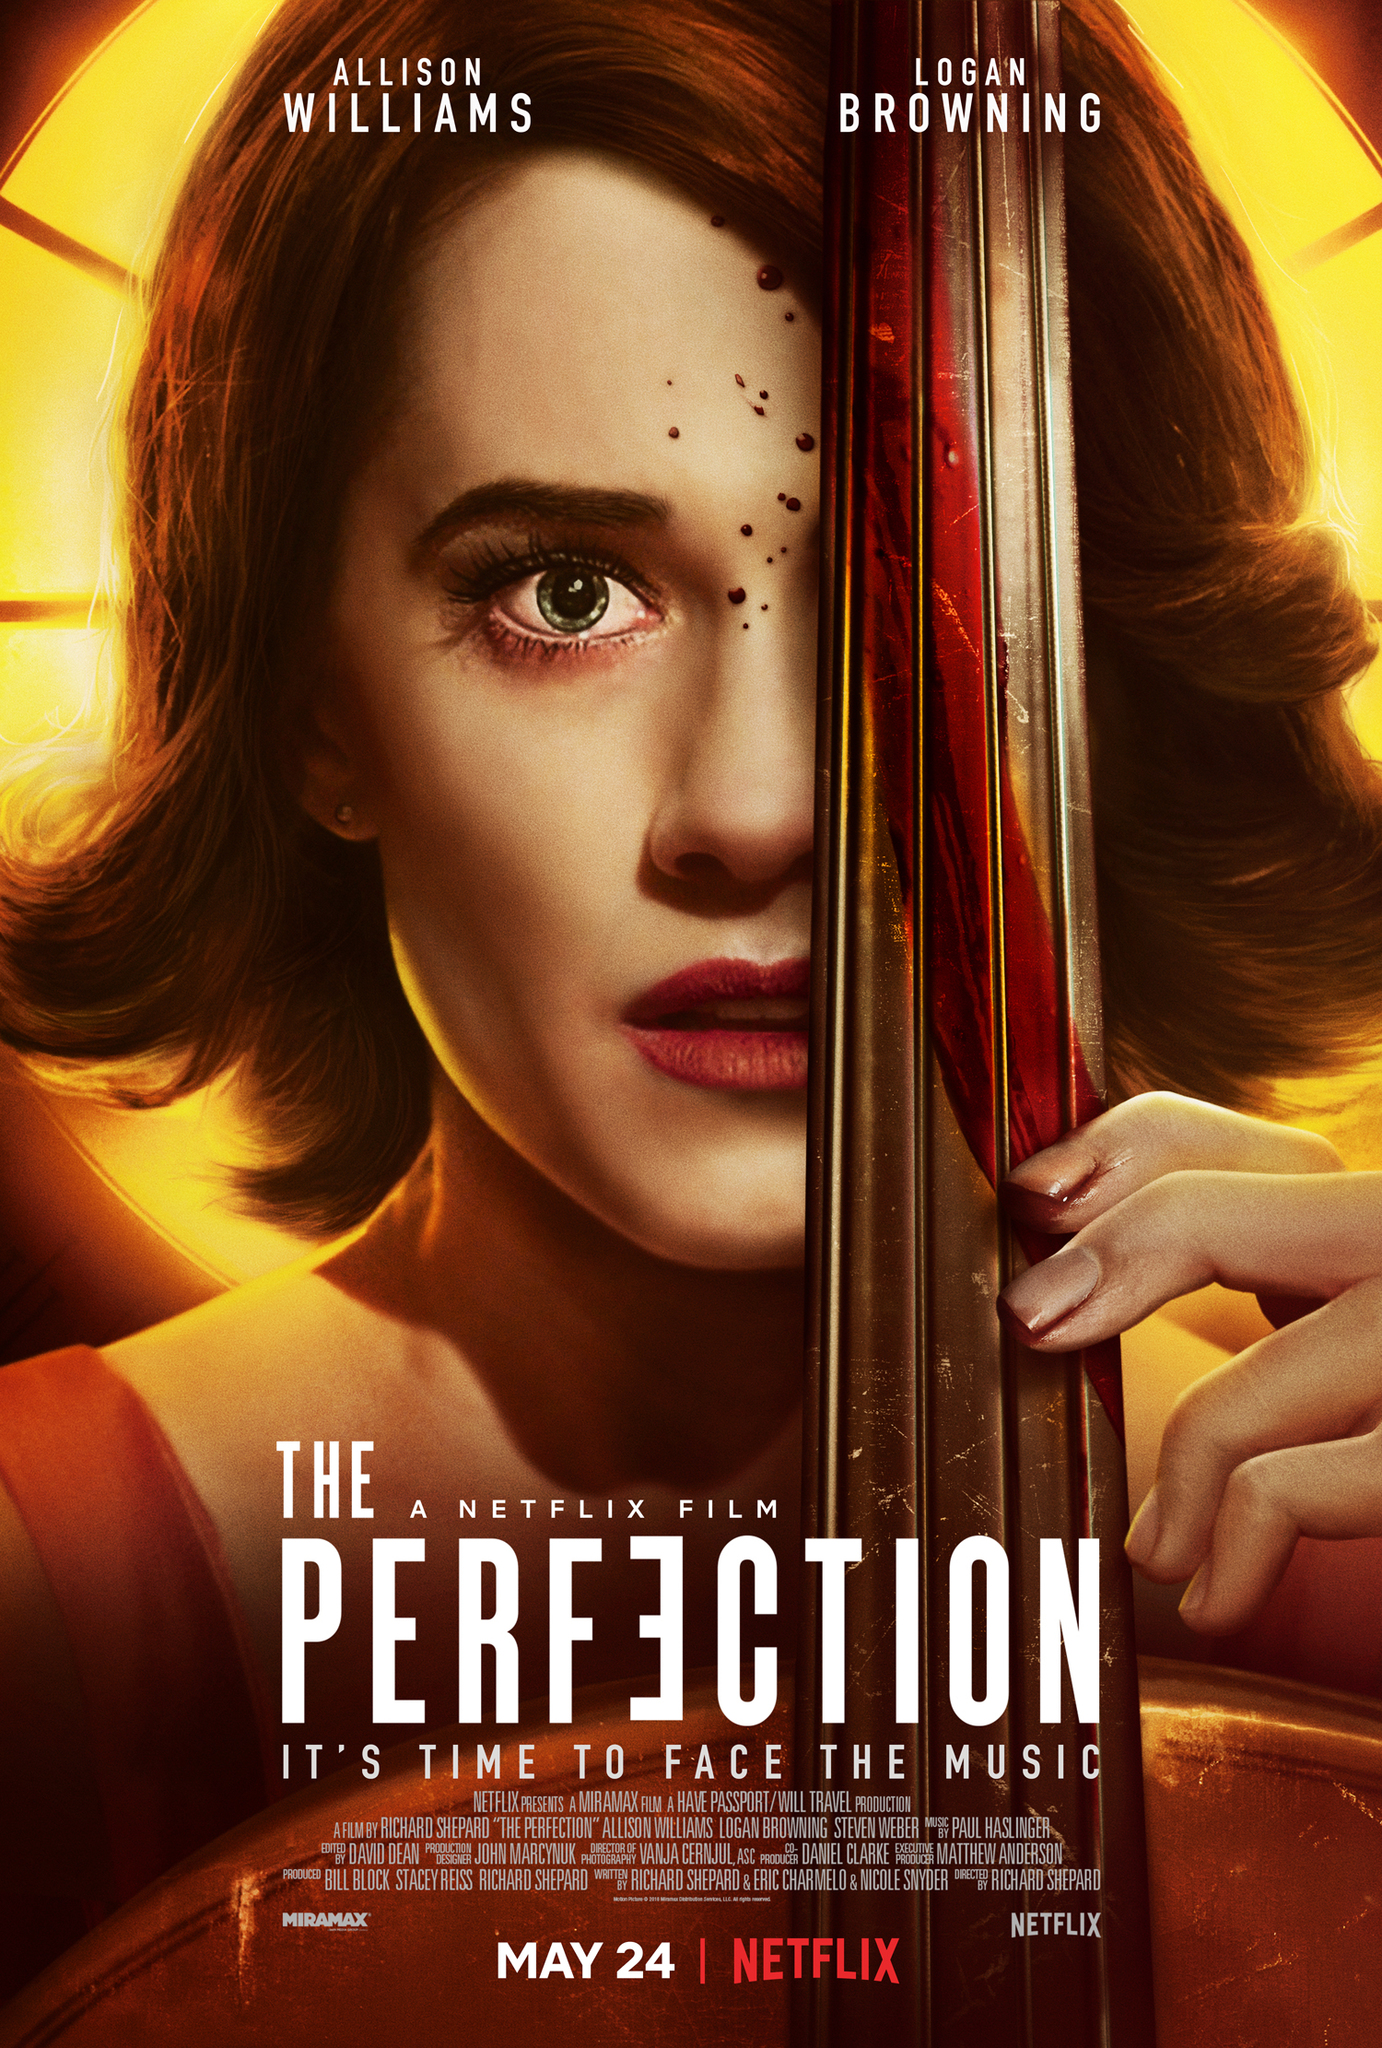 ดูหนังออนไลน์ฟรี The Perfection (2019) มือหนึ่ง หนังเต็มเรื่อง หนังมาสเตอร์ ดูหนังHD ดูหนังออนไลน์ ดูหนังใหม่